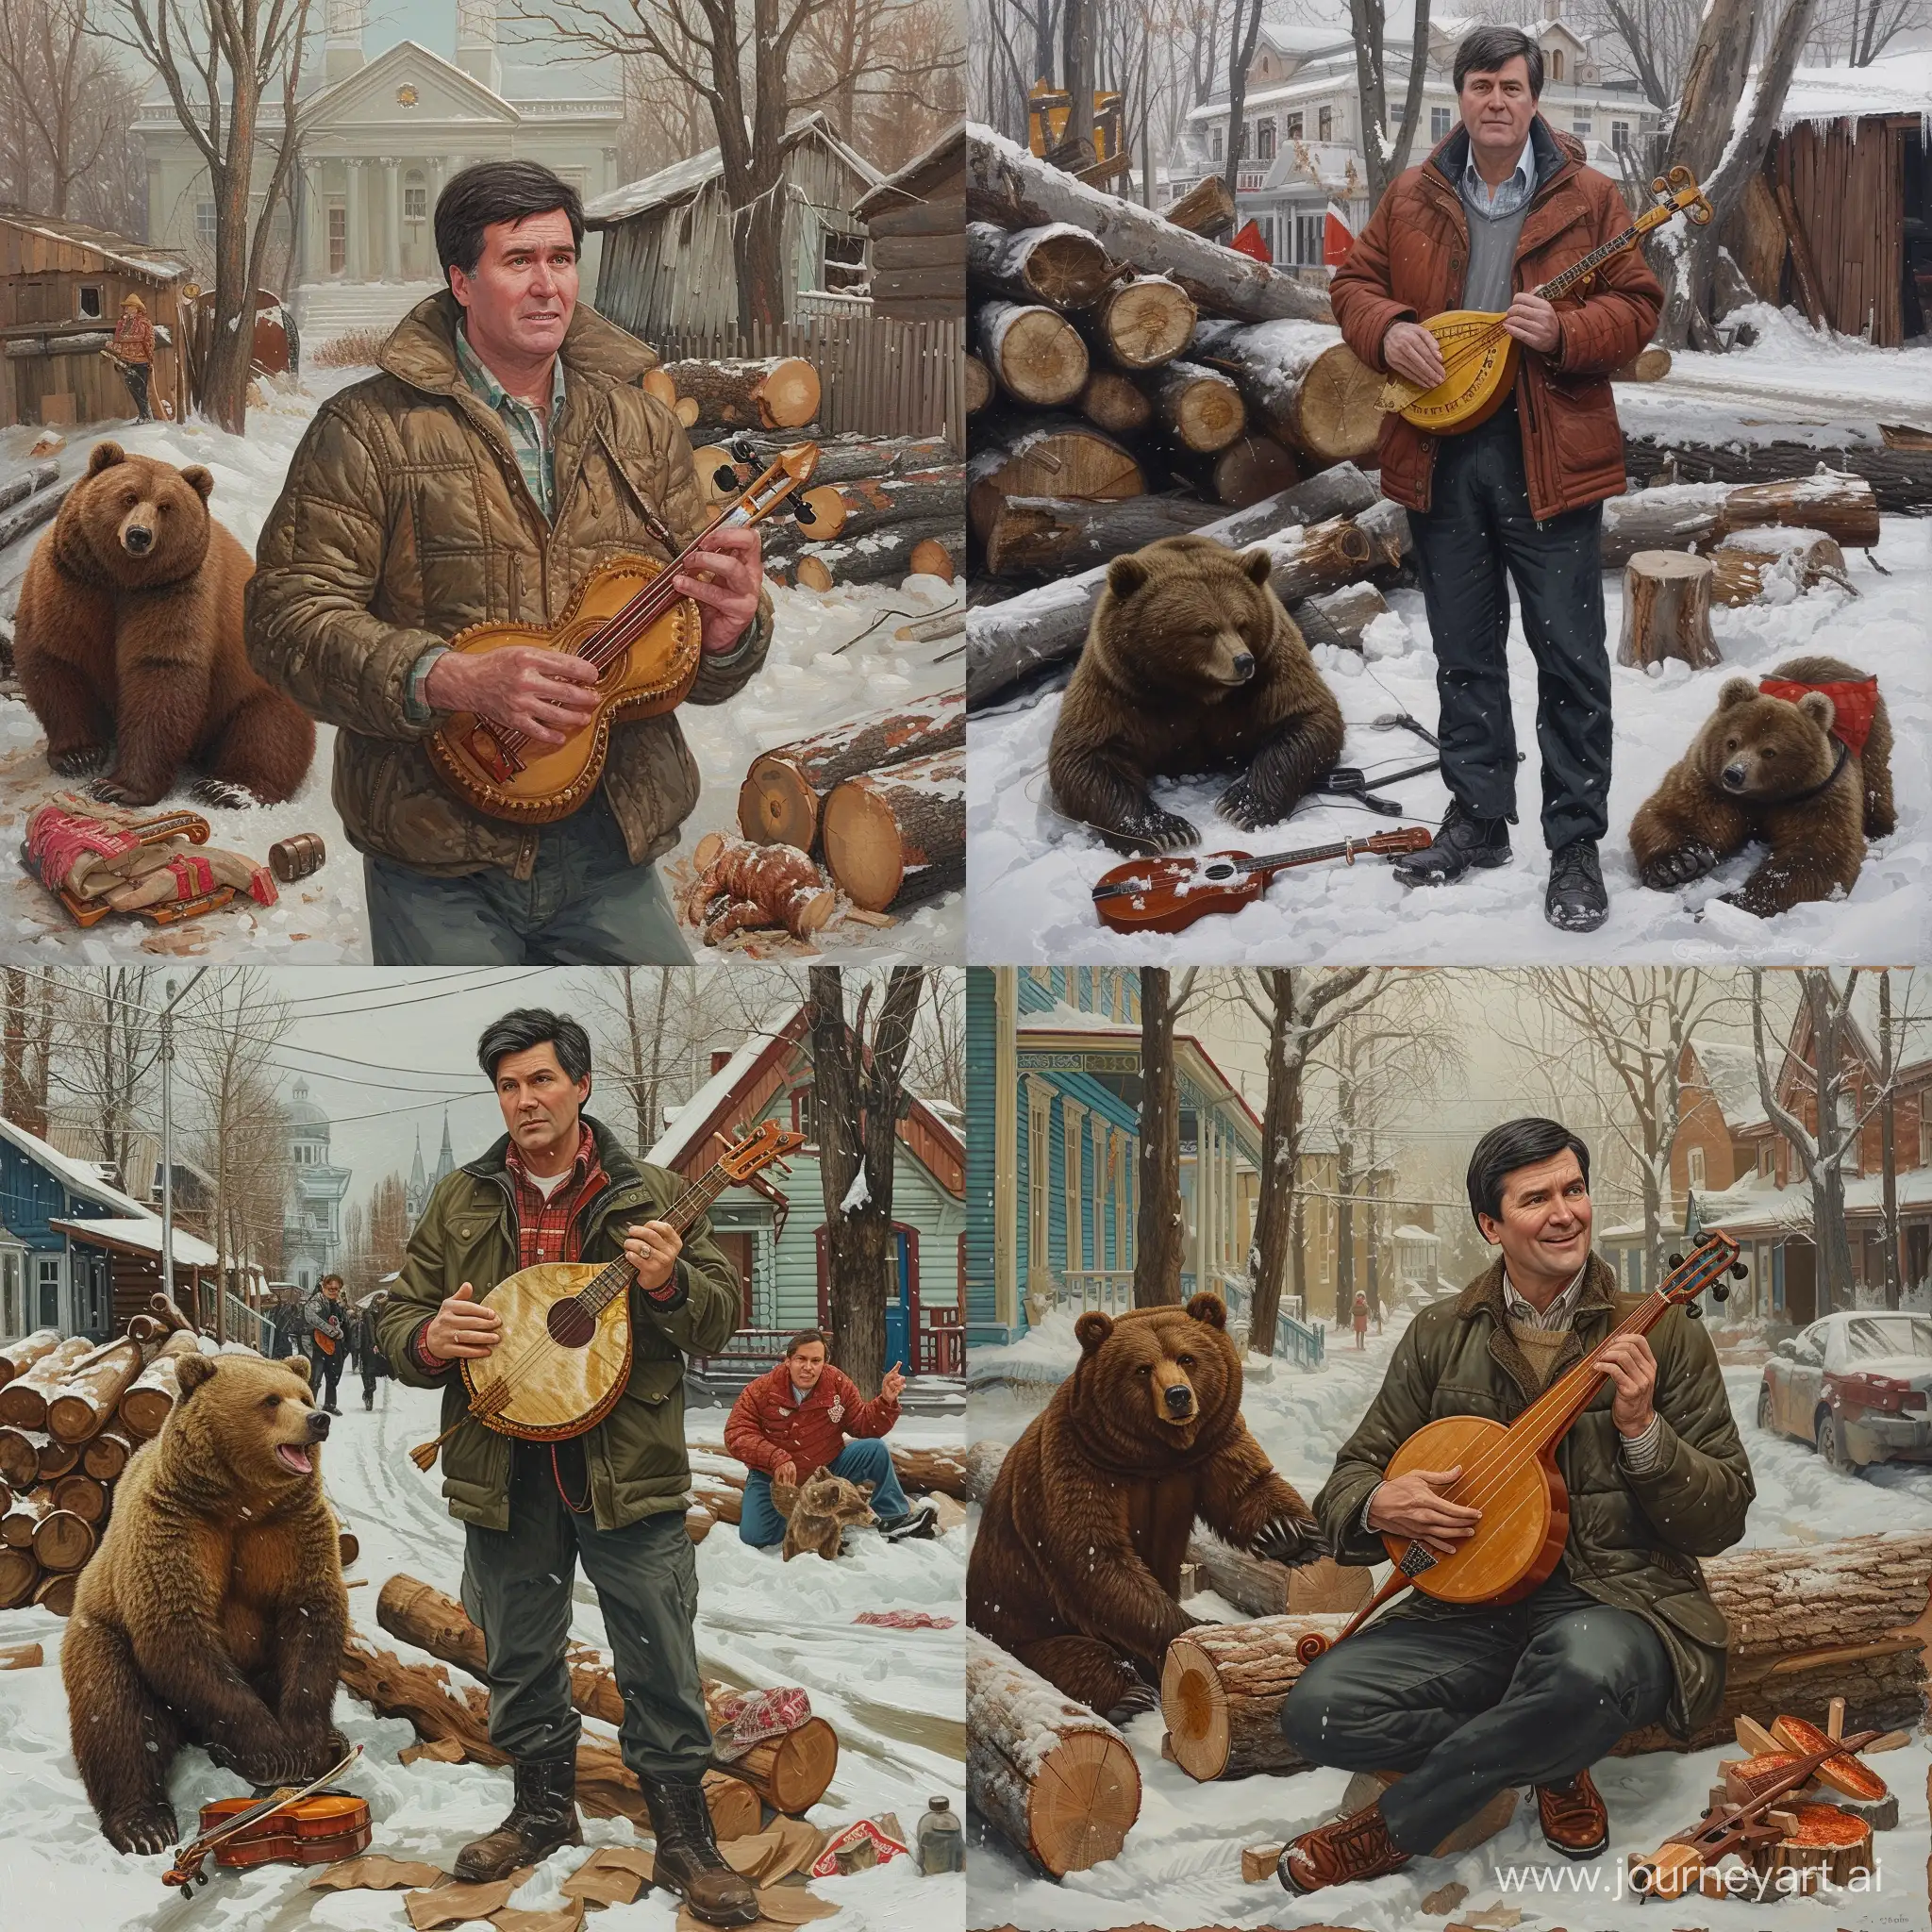 Такер Карлсон с балалайкой в руках, в зимней деревне, рядом дрова, рядом стоит медведь с балалайкой, гиперреализм, зима на улице